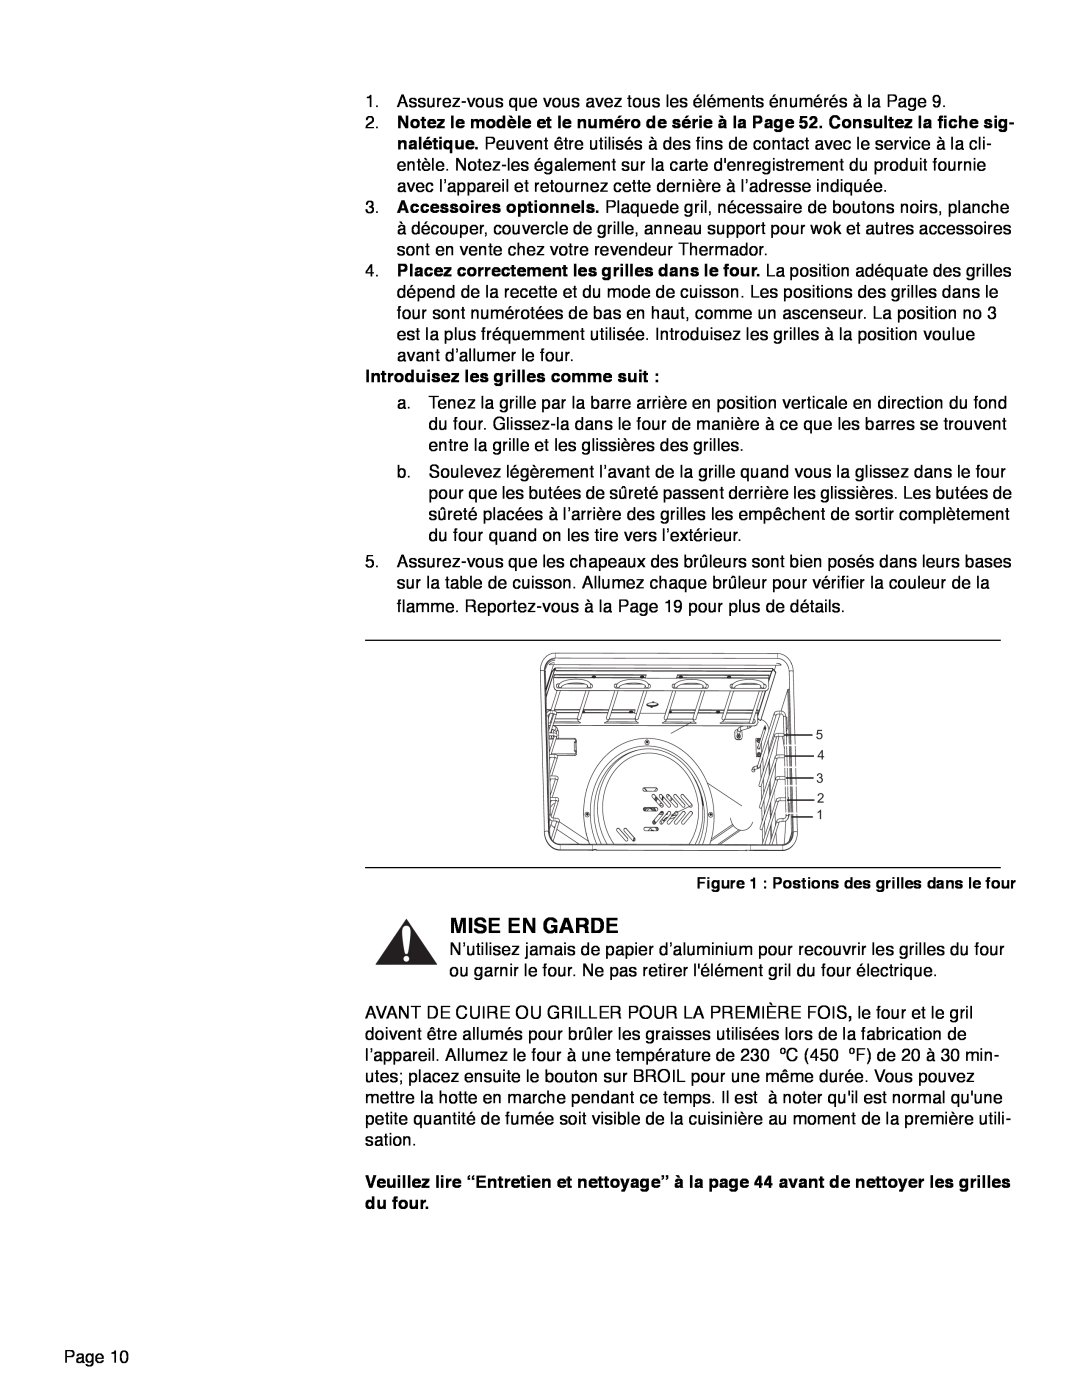 Thermador PRD30, PRD48, PRD36 manual Mise En Garde, Introduisez les grilles comme suit 